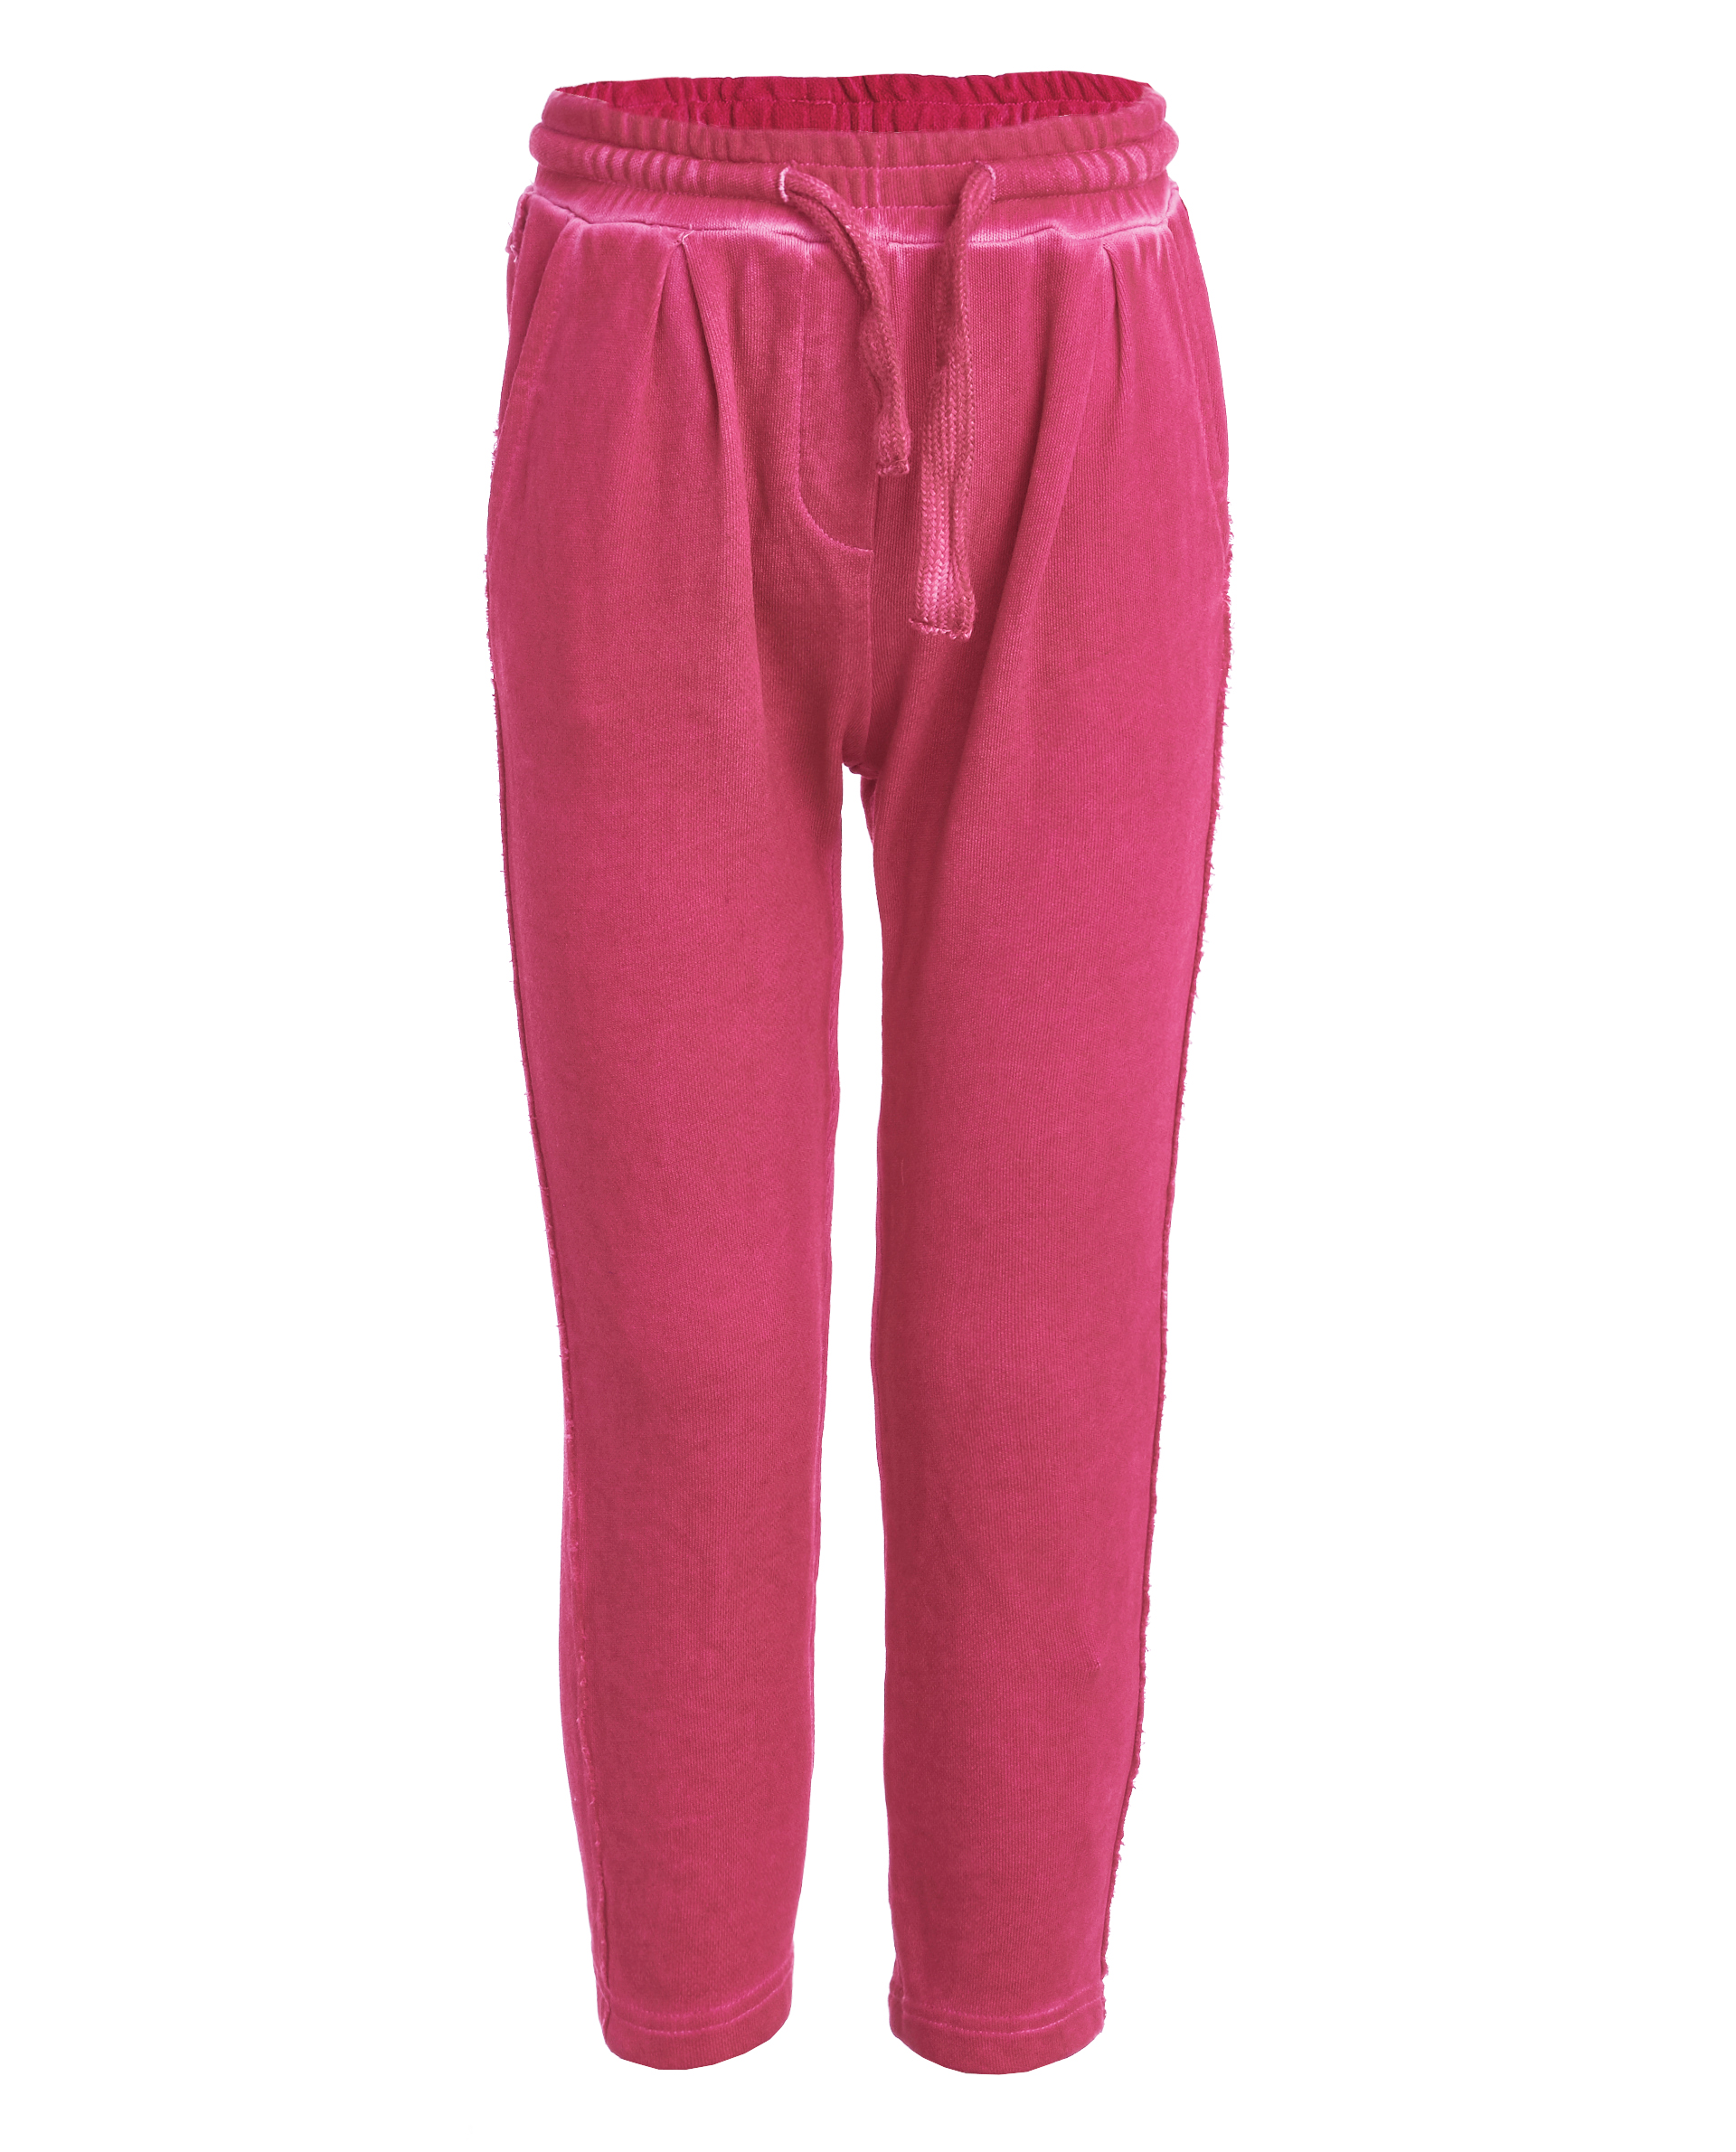 Купить 11902GMC5604, Розовые трикотажные брюки Gulliver, розовый, 98, Женский, ВЕСНА/ЛЕТО 2019 (shop: GulliverMarket Gulliver Market)